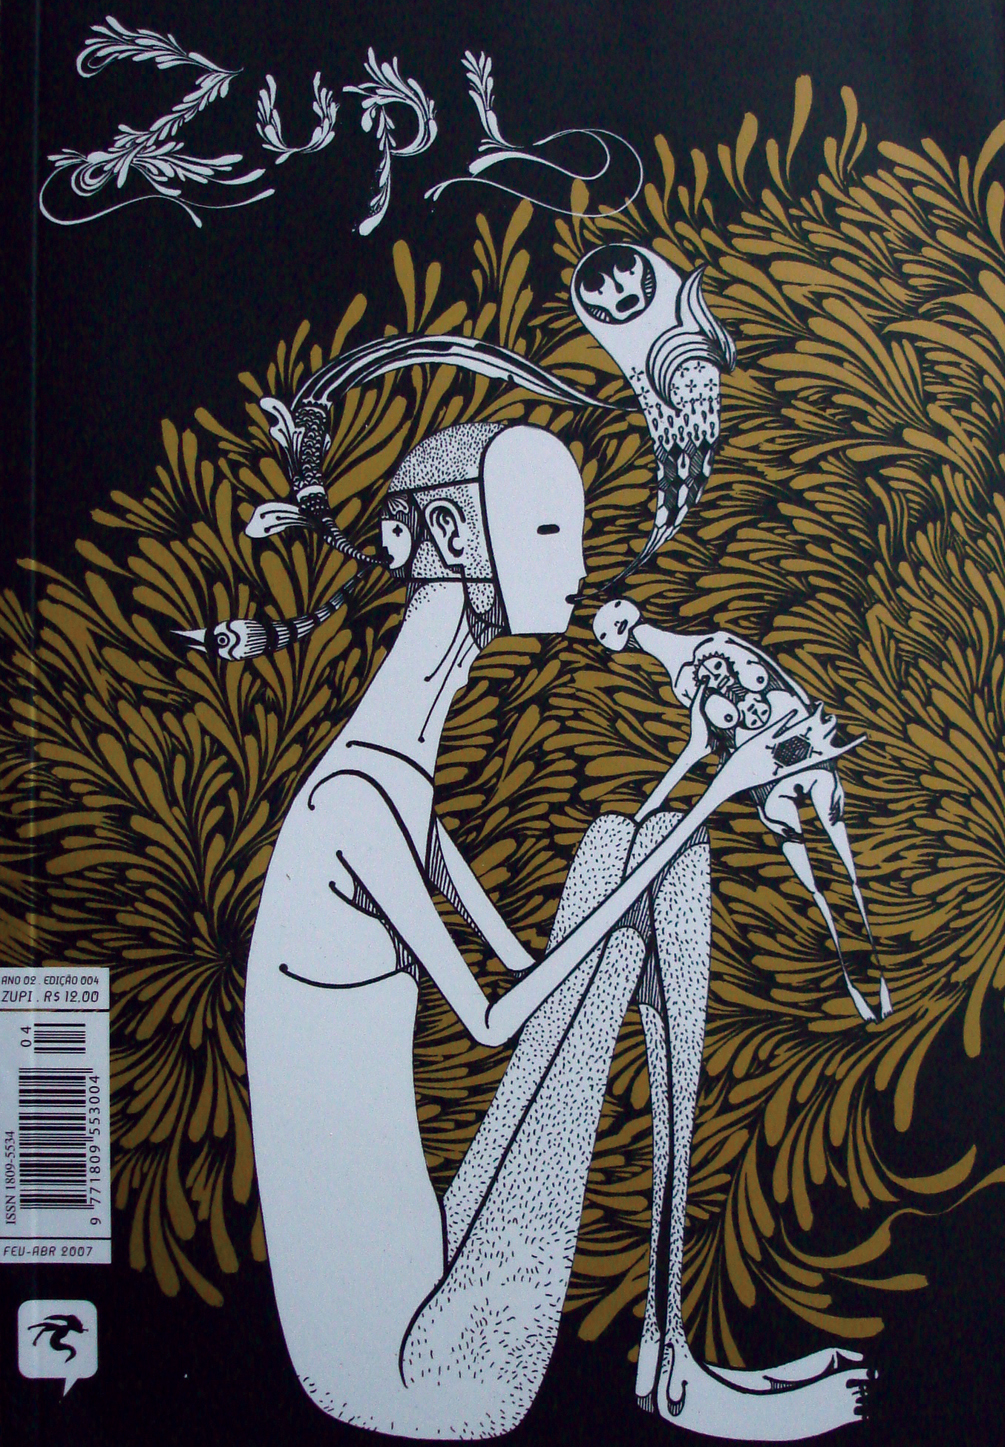 arte art design illustração revista magazine comics hq Arte de rua publicidade advertisement anima motion motiongraphics